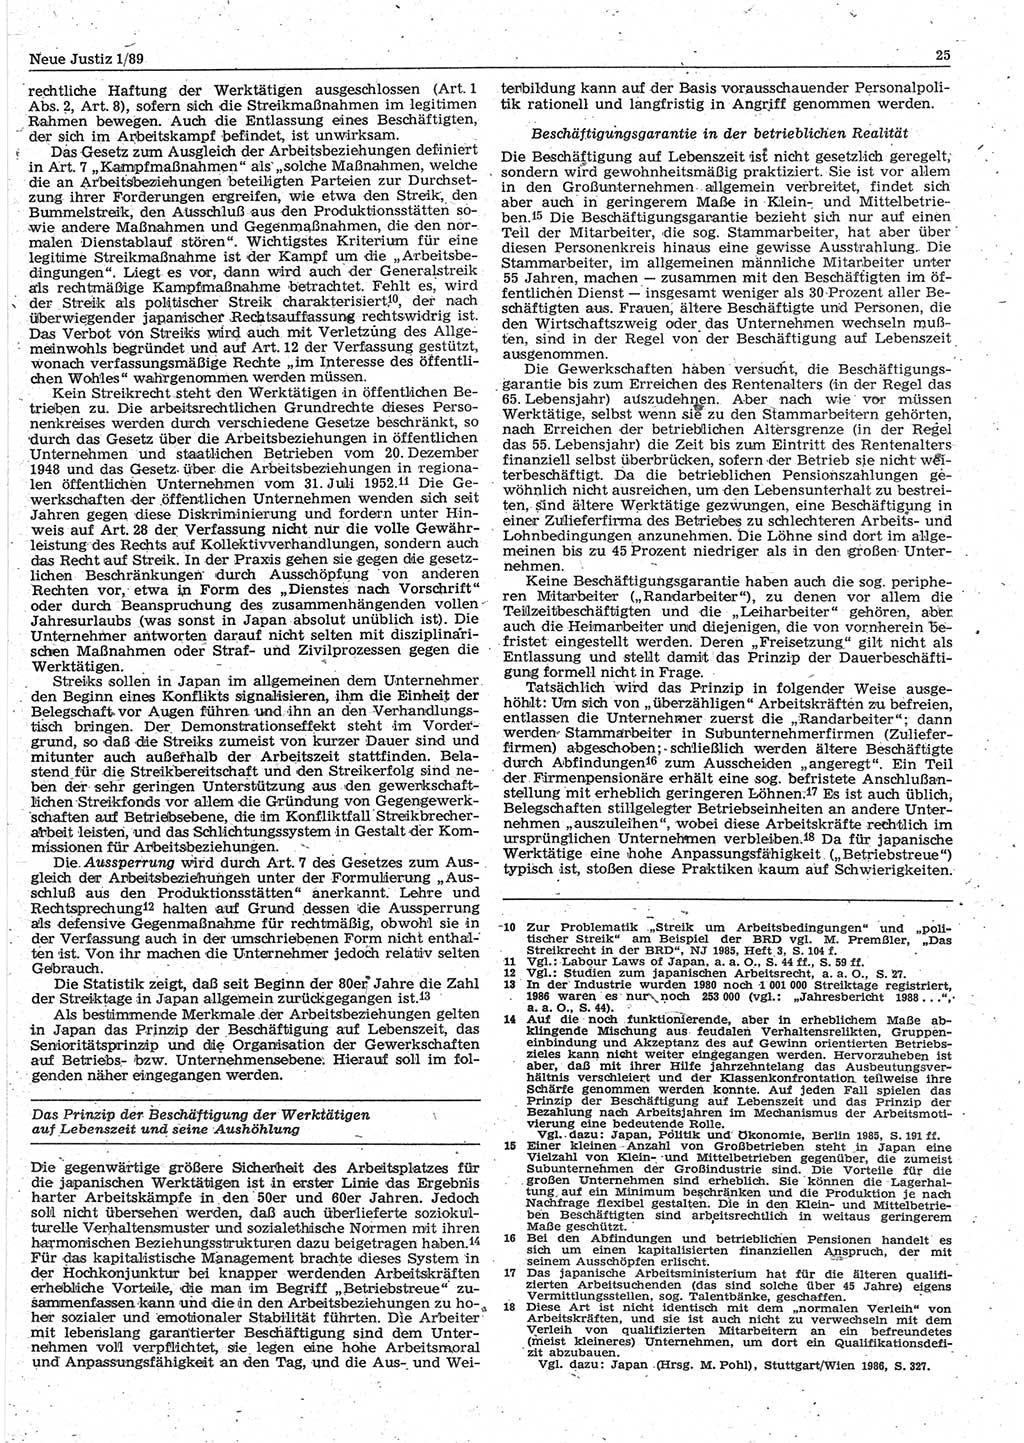 Neue Justiz (NJ), Zeitschrift für sozialistisches Recht und Gesetzlichkeit [Deutsche Demokratische Republik (DDR)], 43. Jahrgang 1989, Seite 25 (NJ DDR 1989, S. 25)